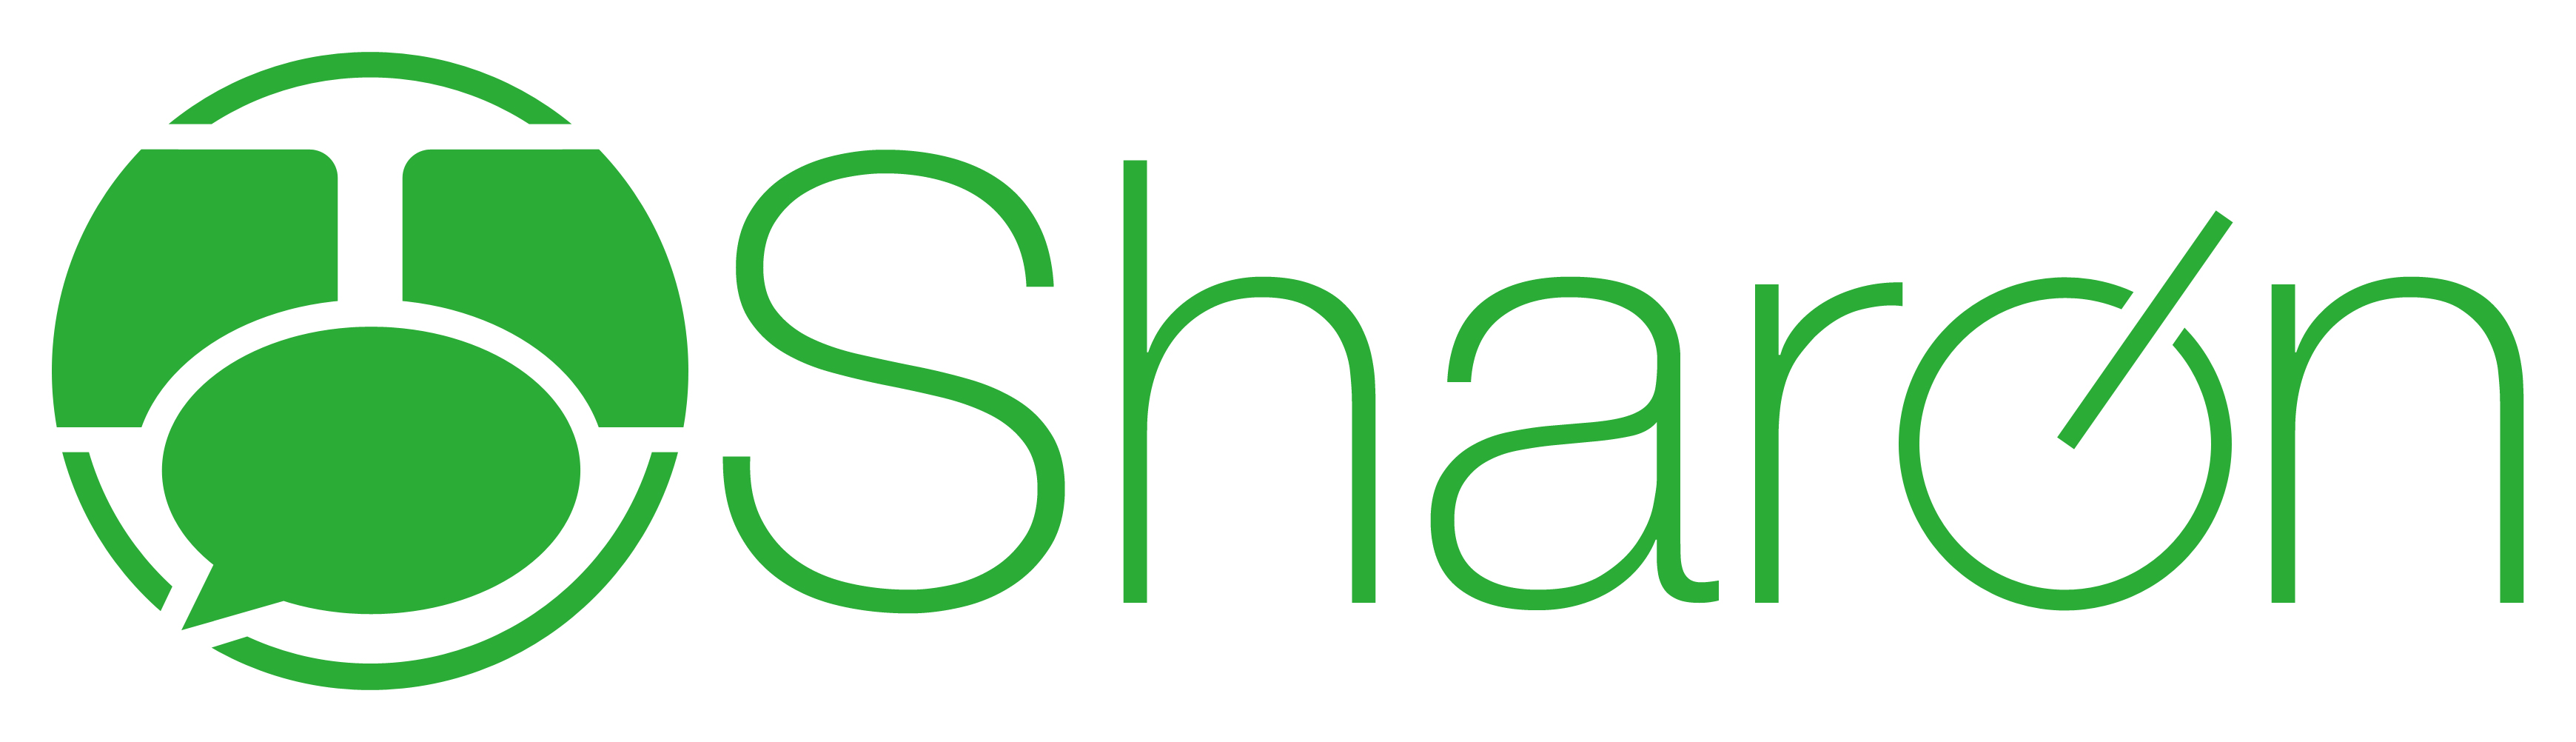 Logo Sharon